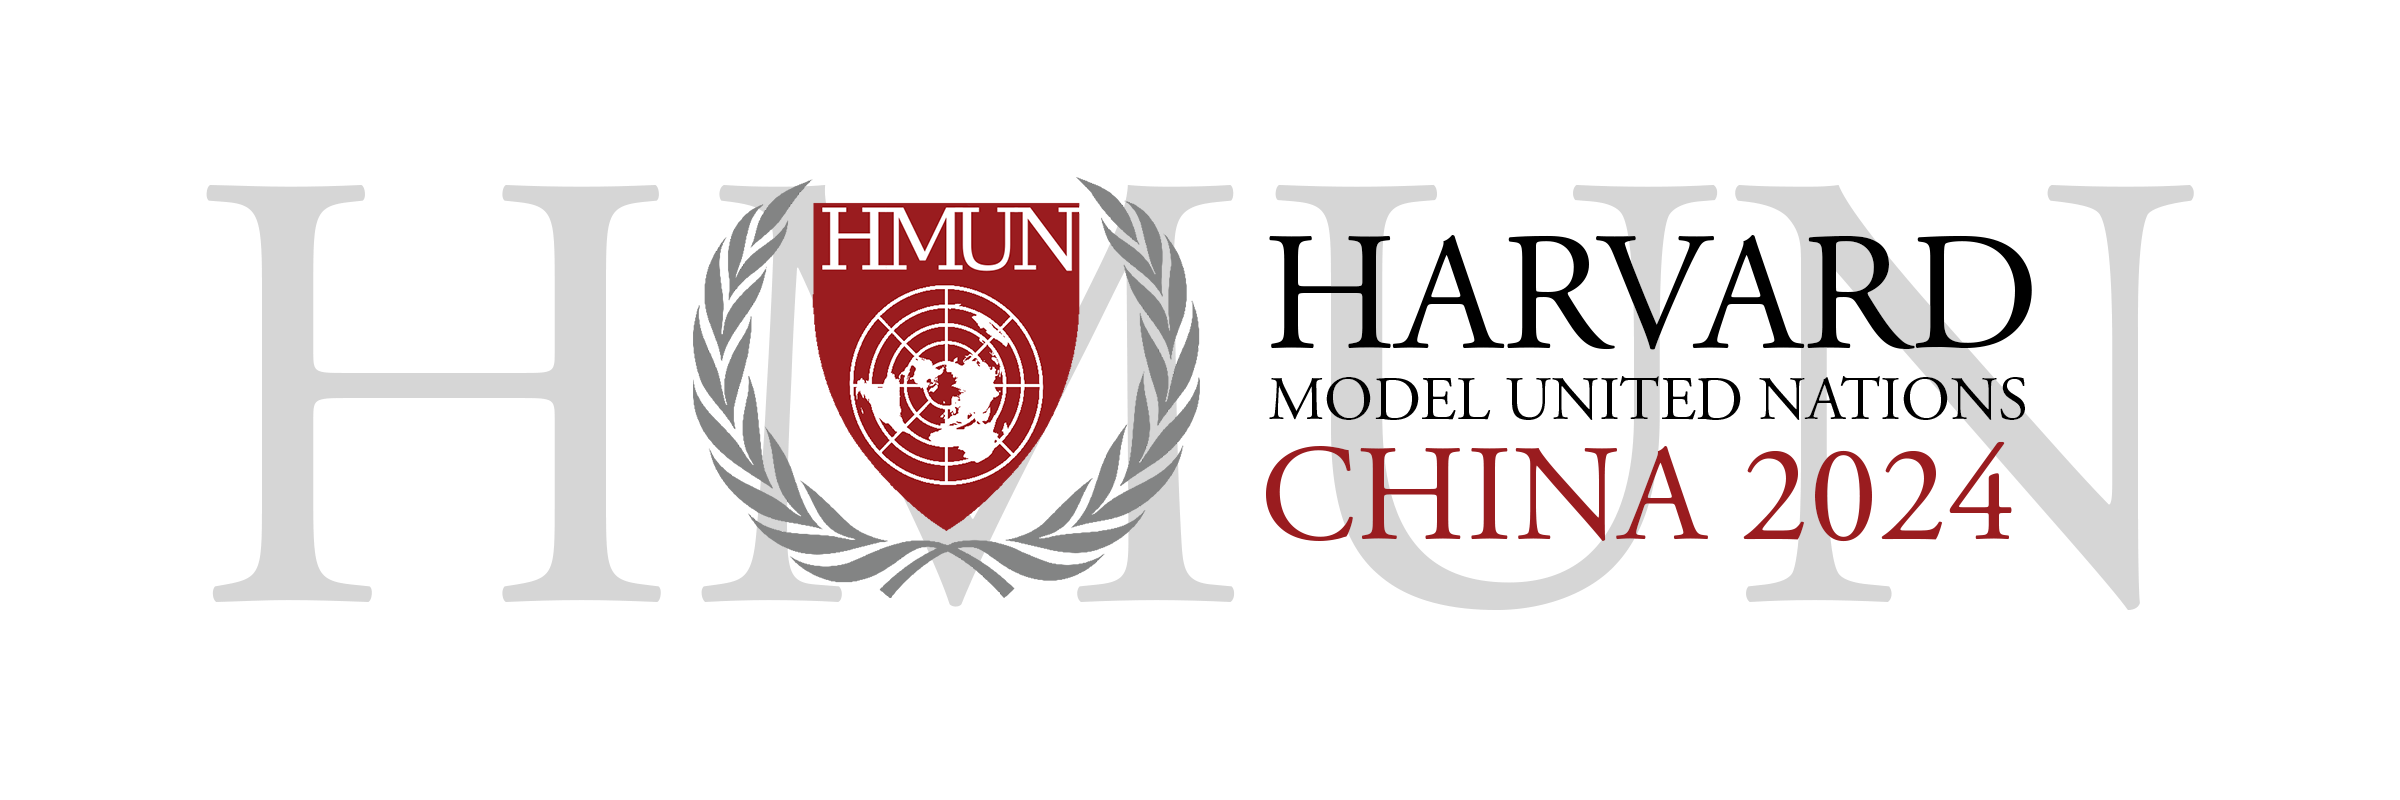 HMUN China